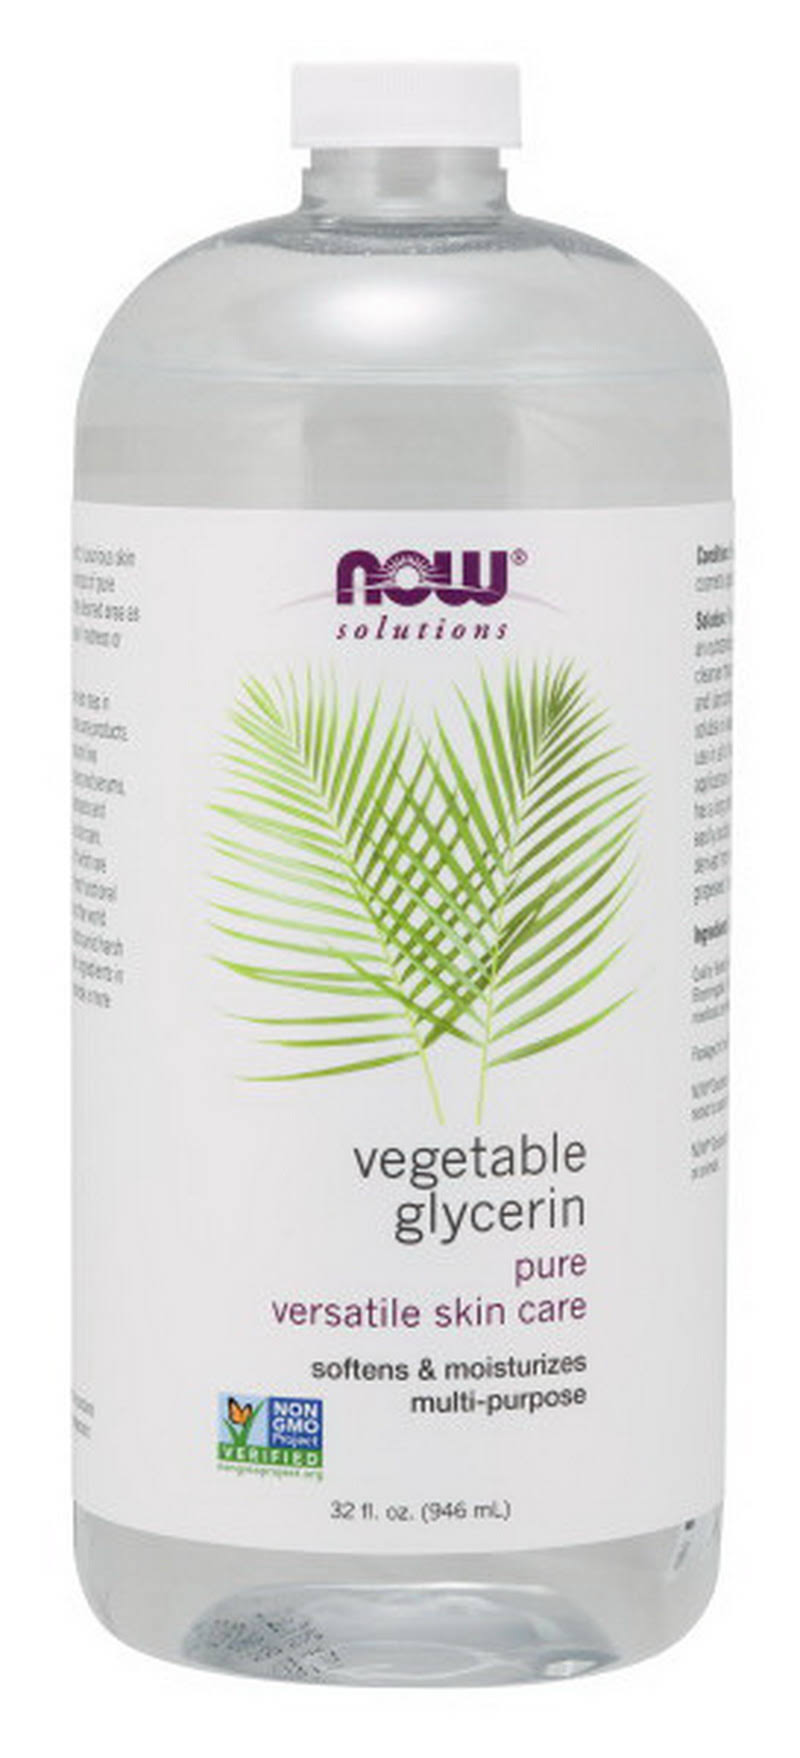 NOW Foods Vegetable Glycerin 32 fl oz